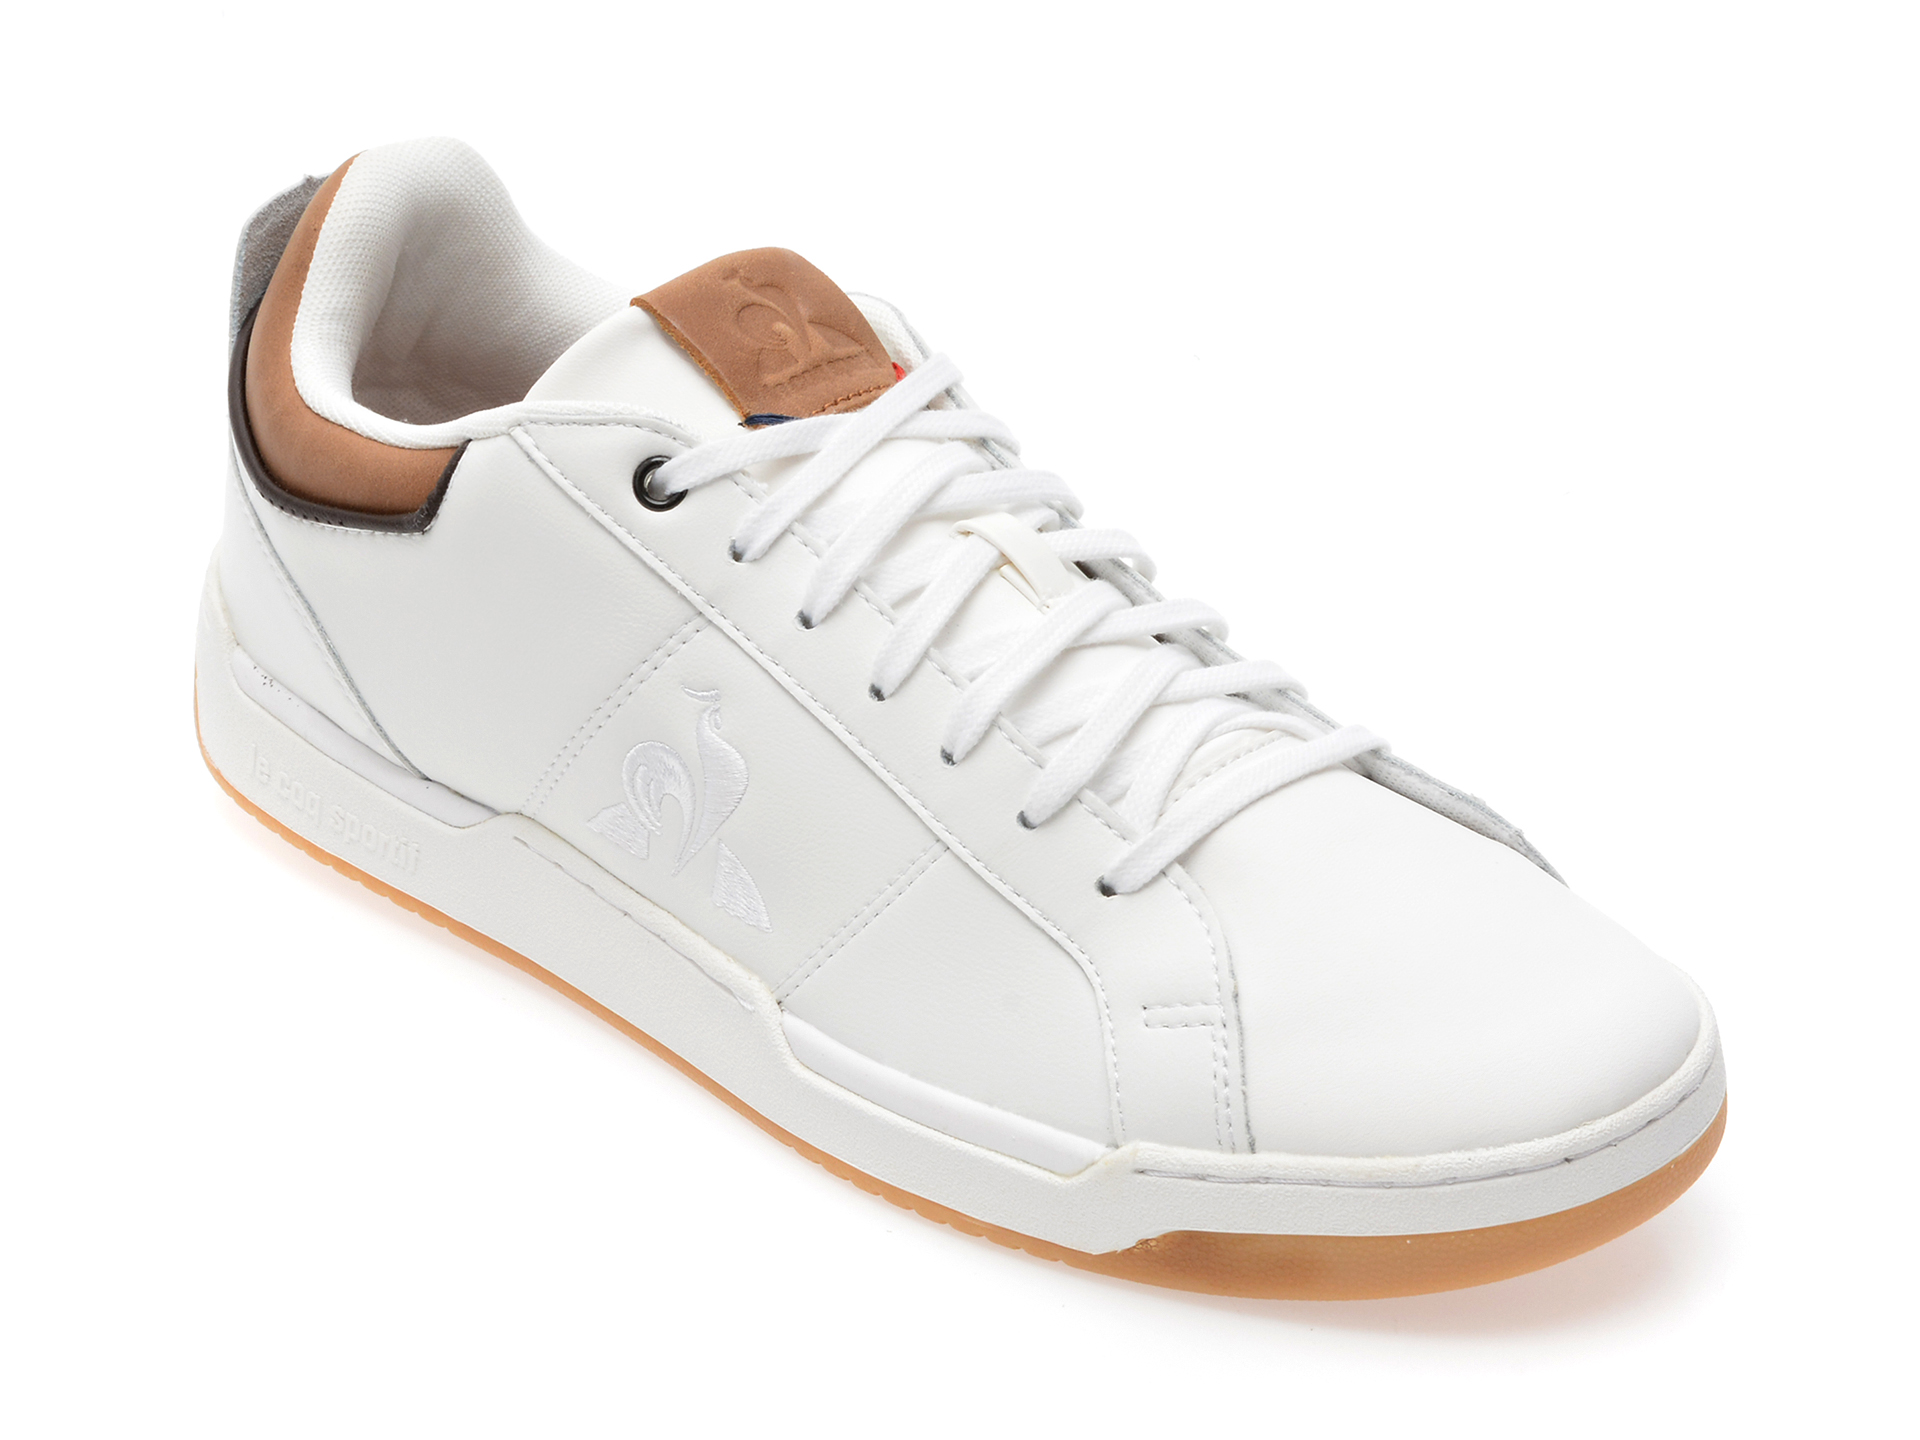 Pantofi sport LE COQ SPORTIF albi, 2210478, din piele naturala /barbati/pantofi